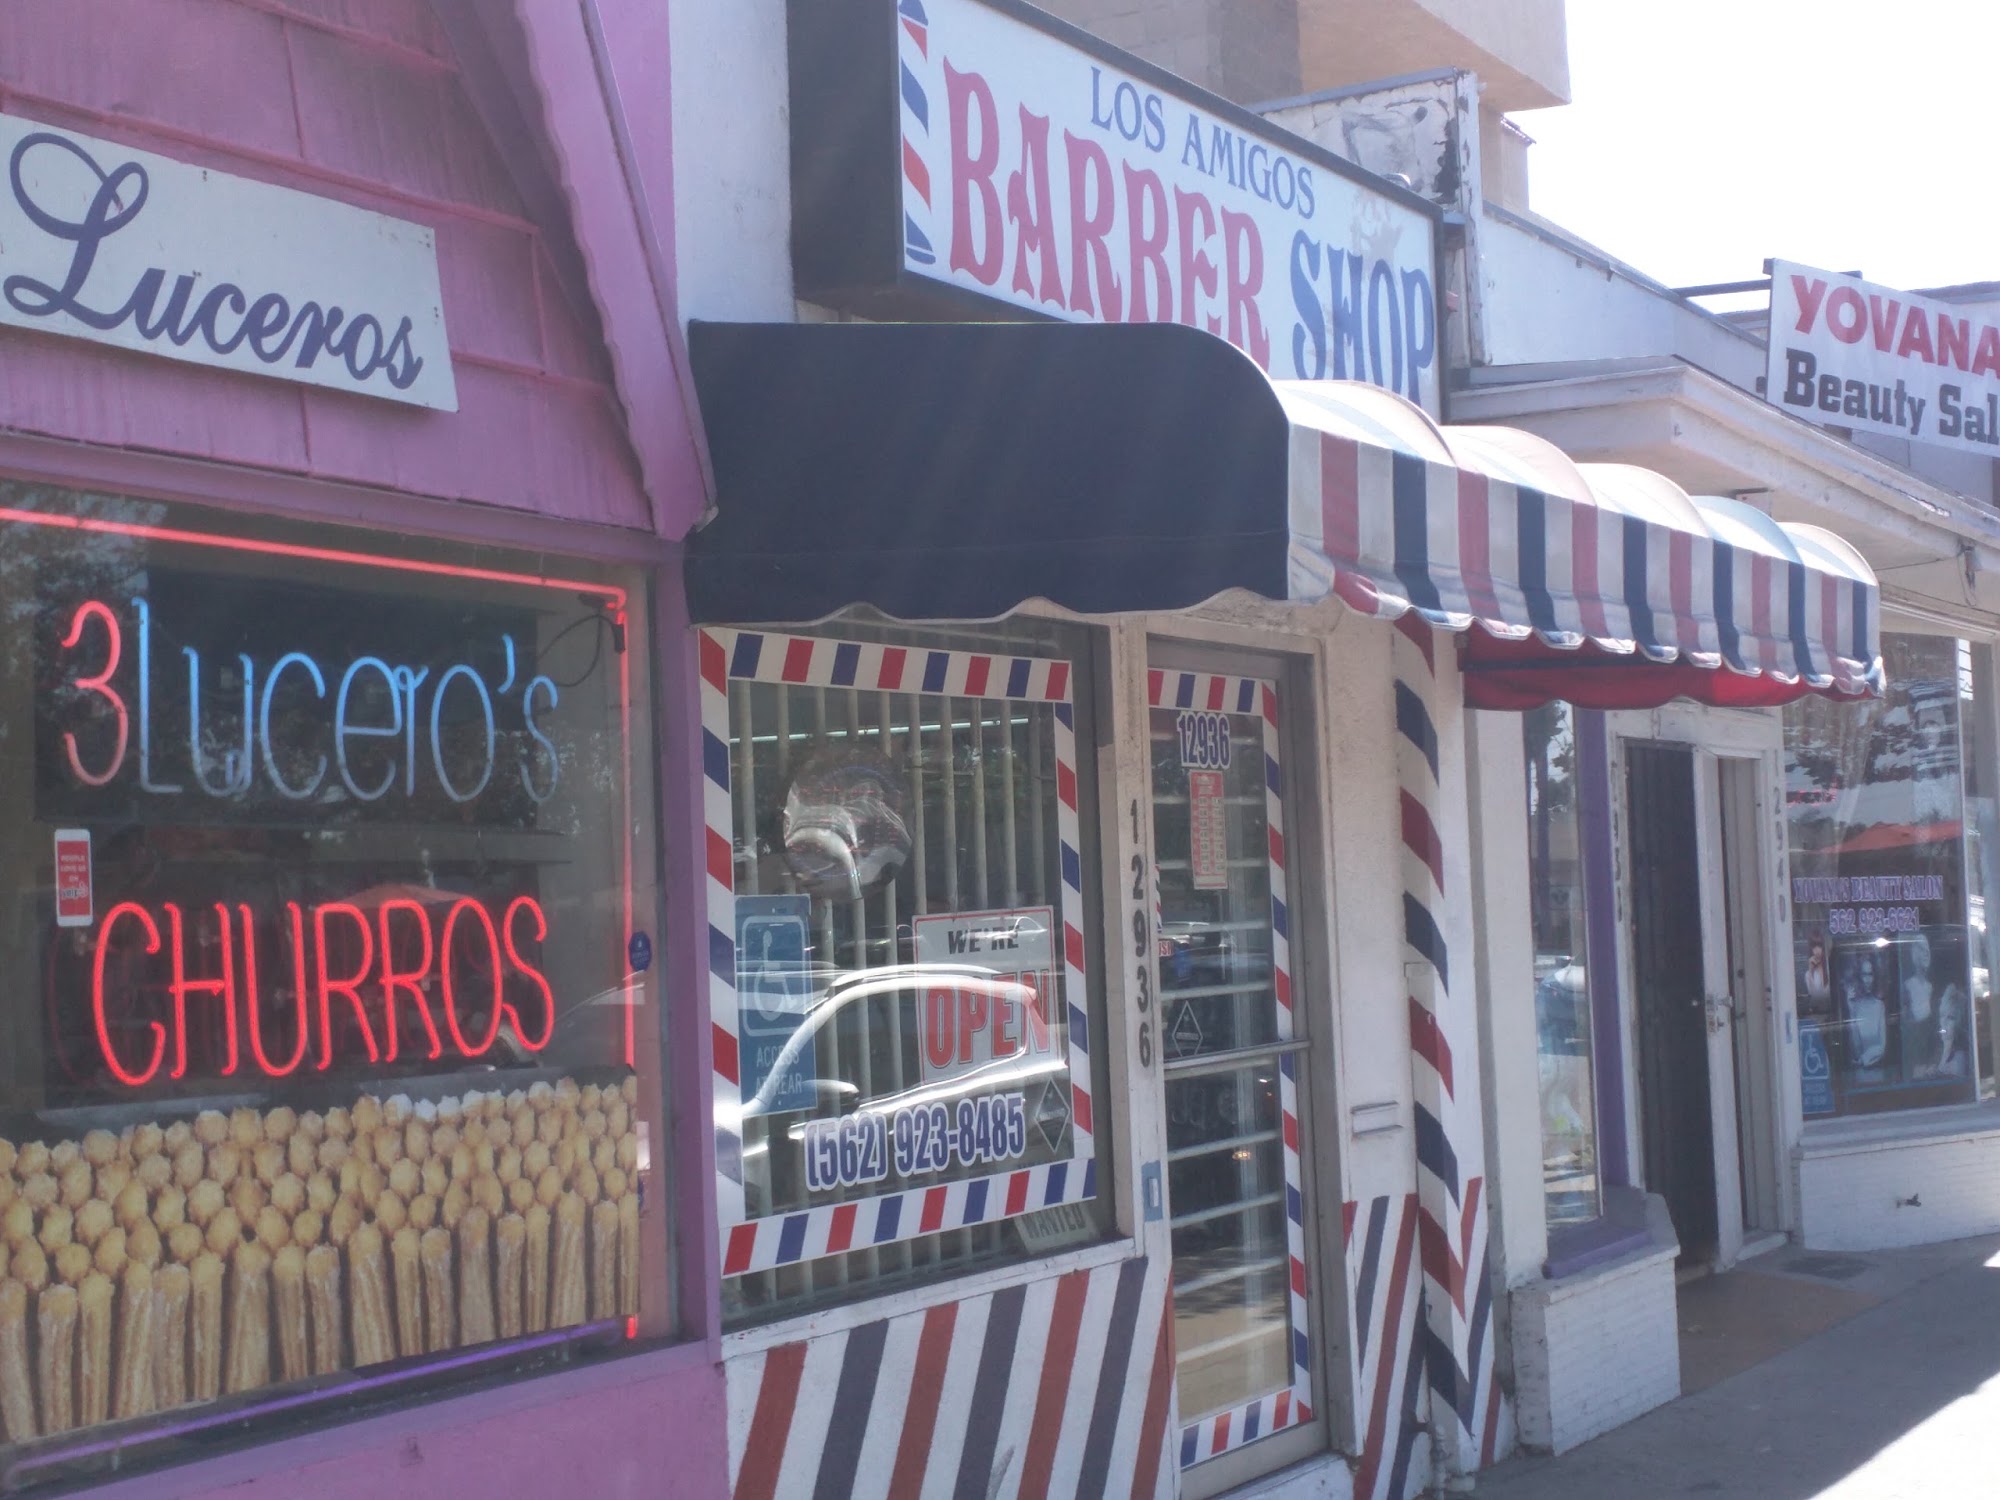 Los Amigos Barber Shop